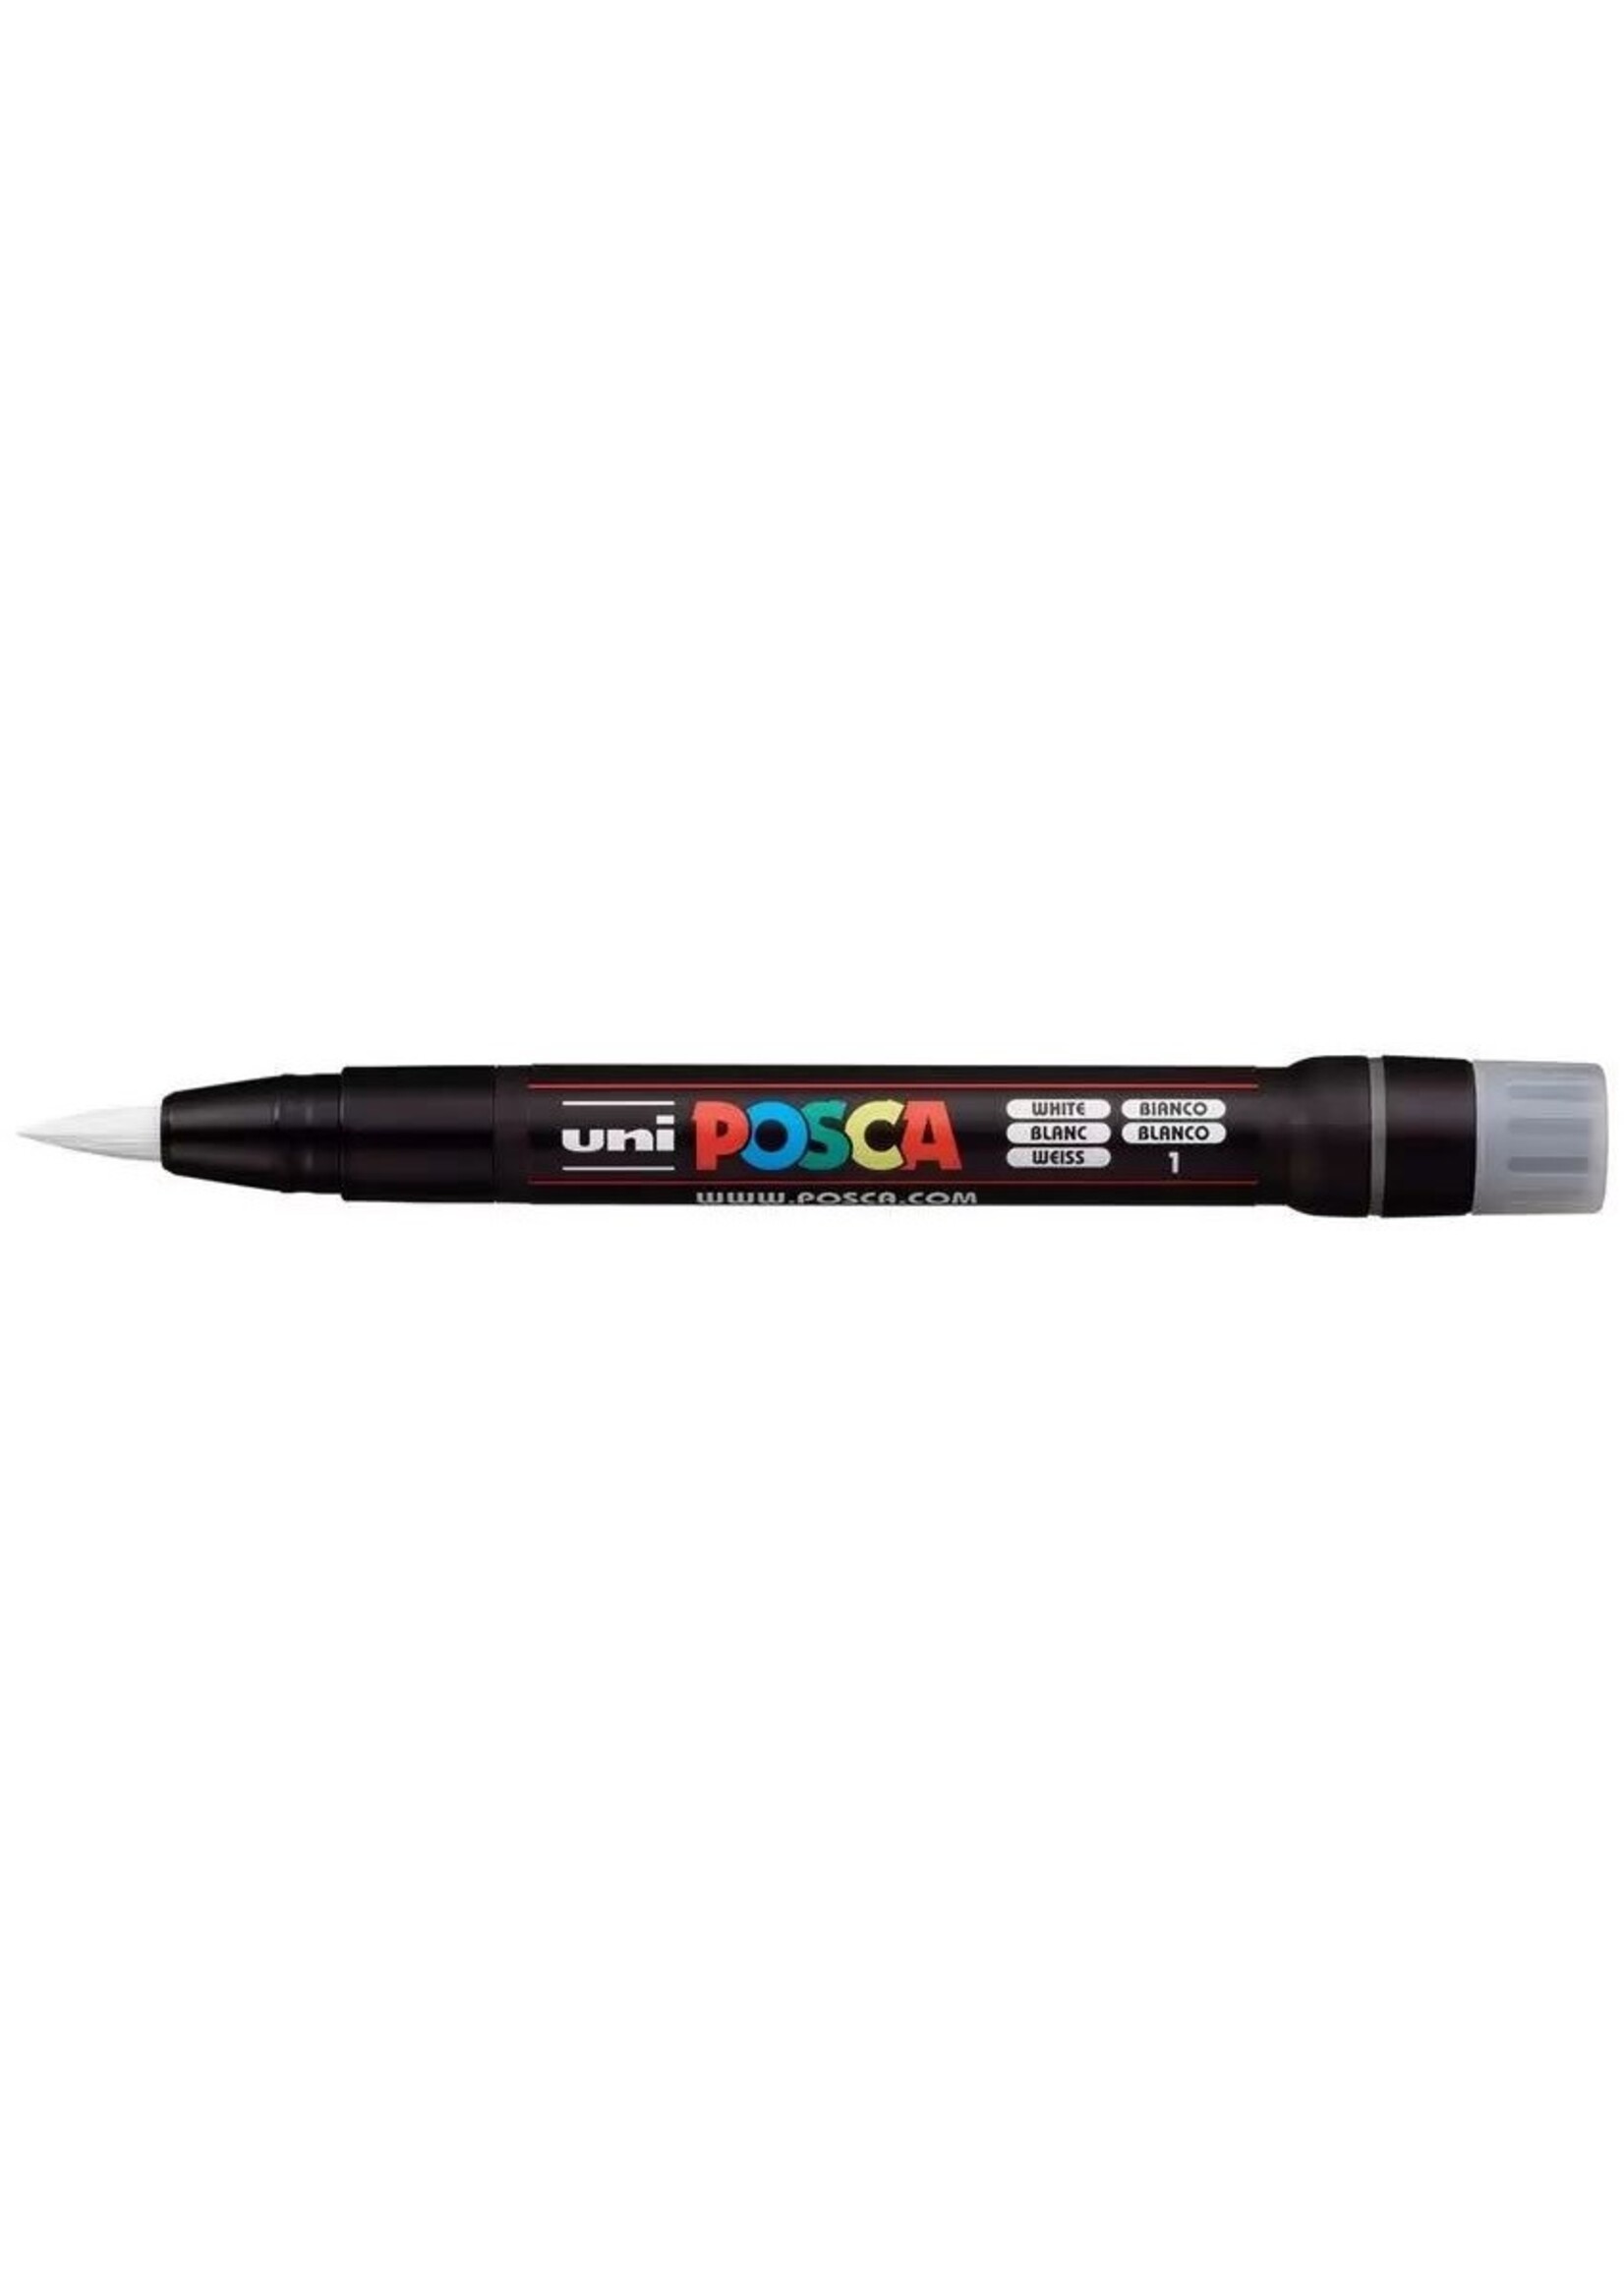 Posca Pen PCF-350 Brush, White